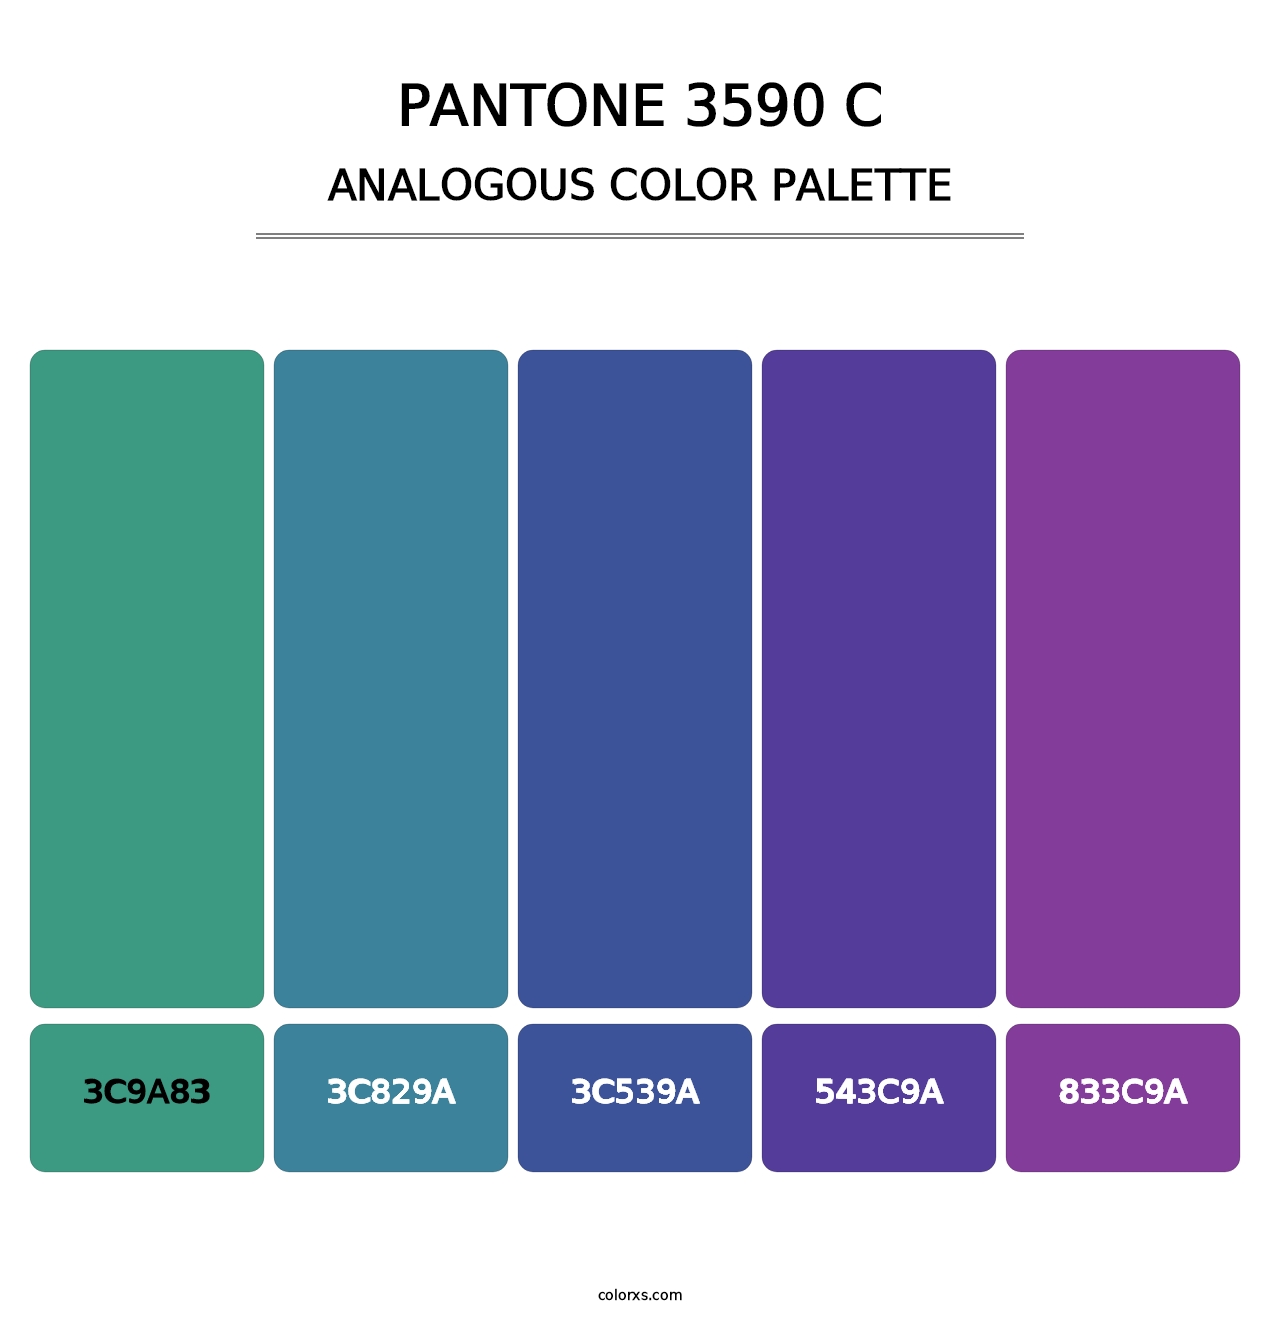 PANTONE 3590 C - Analogous Color Palette